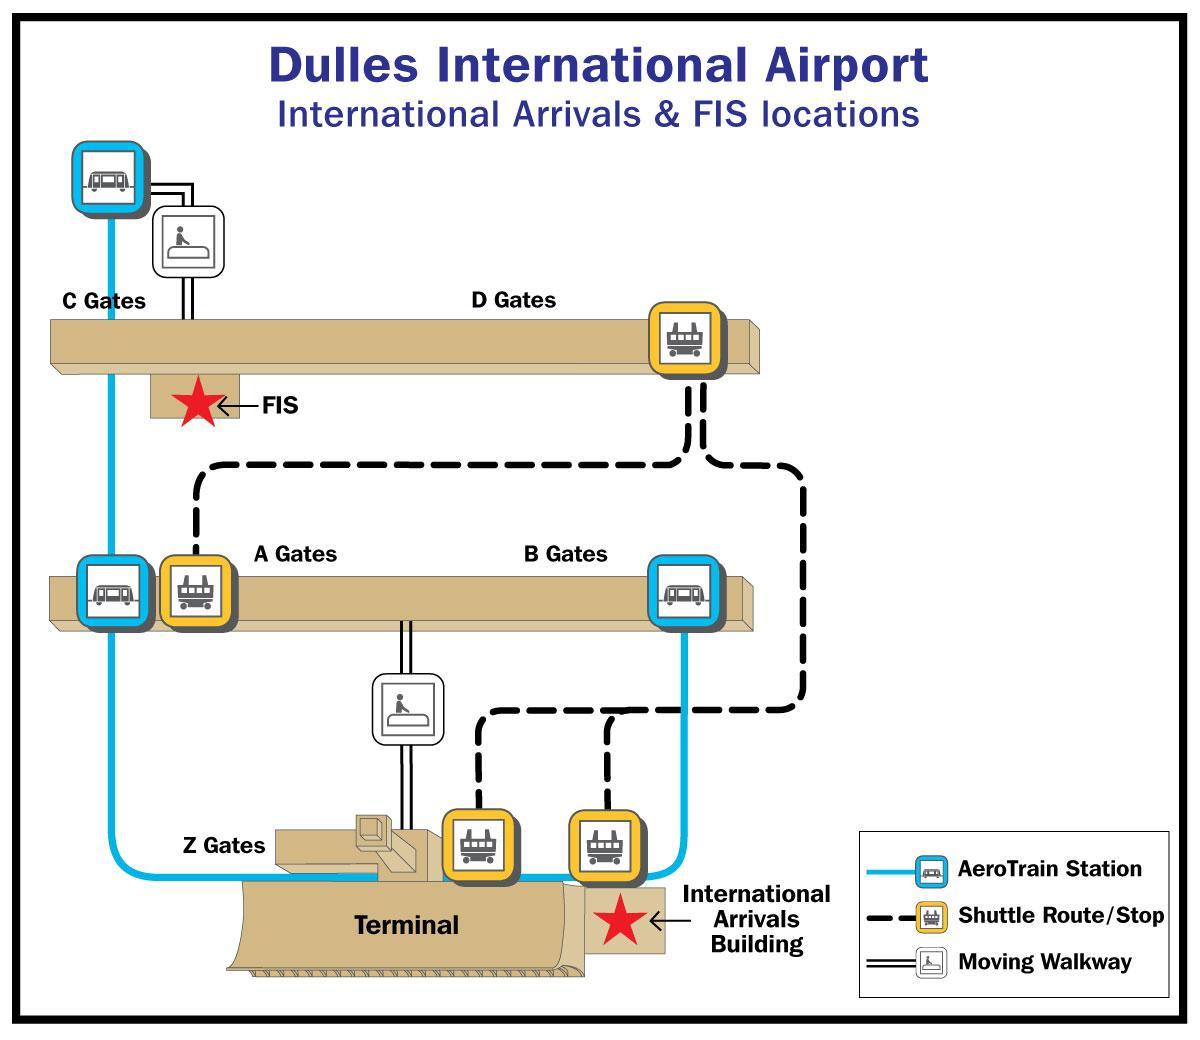 letališče dulles vrata zemljevid